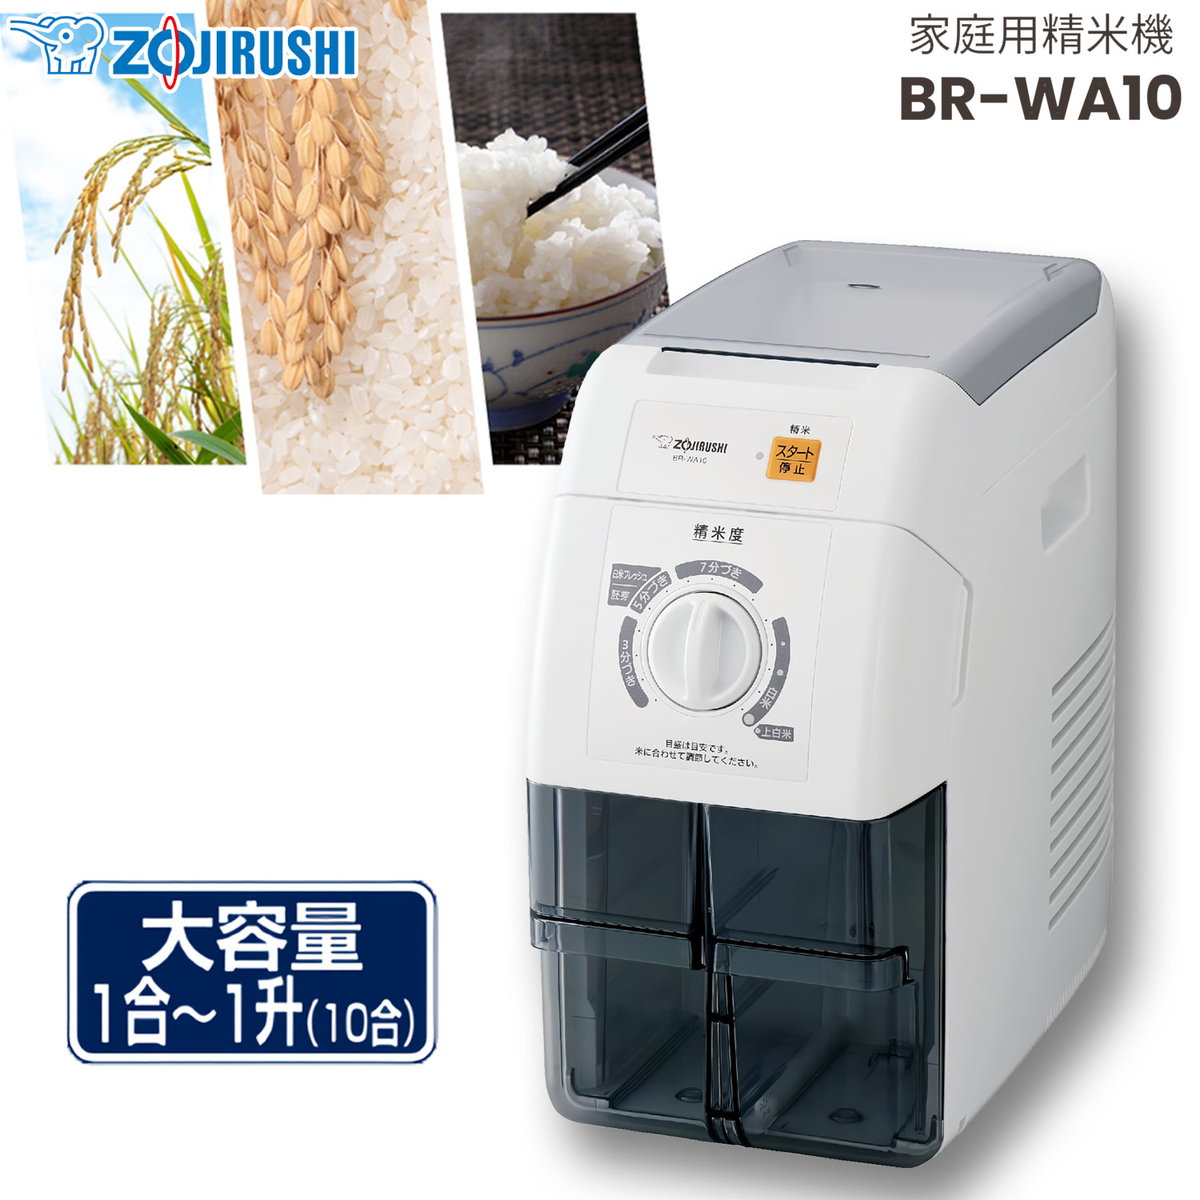 ZOUJIRUSHI 家庭用精米機 「つきたて風味」 圧力式 1合~10合対応 ホワイト お手入れ 簡単 精米度15段階　BR-WA10-WA